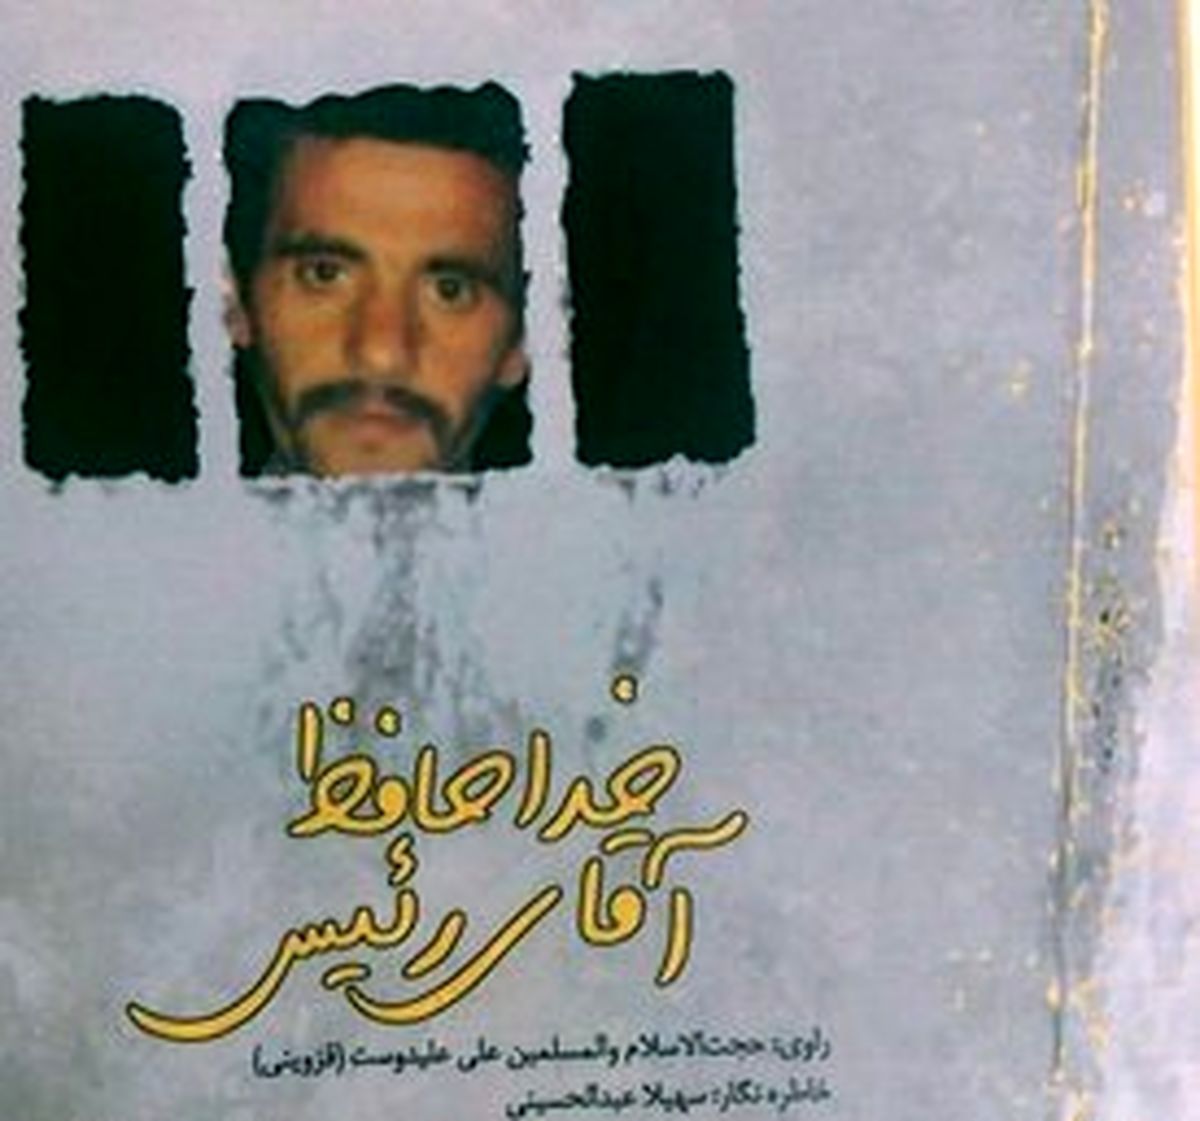 حال و هوای آزادی ۱۰۰۰ اسیر ایرانی در یک روز